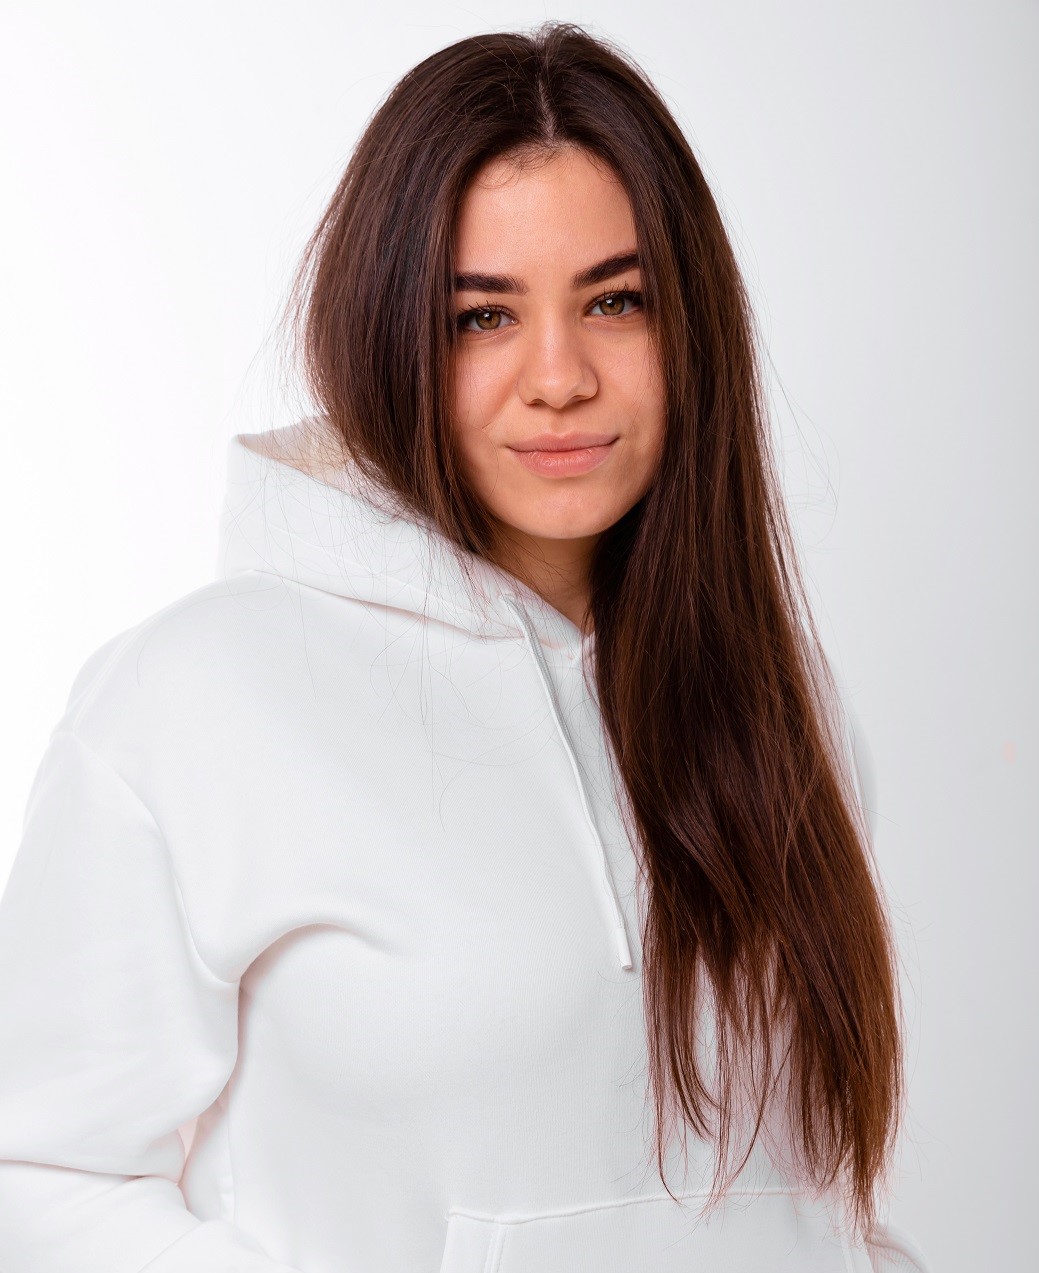 Daria Yaniieva in white hoodie in front of white background